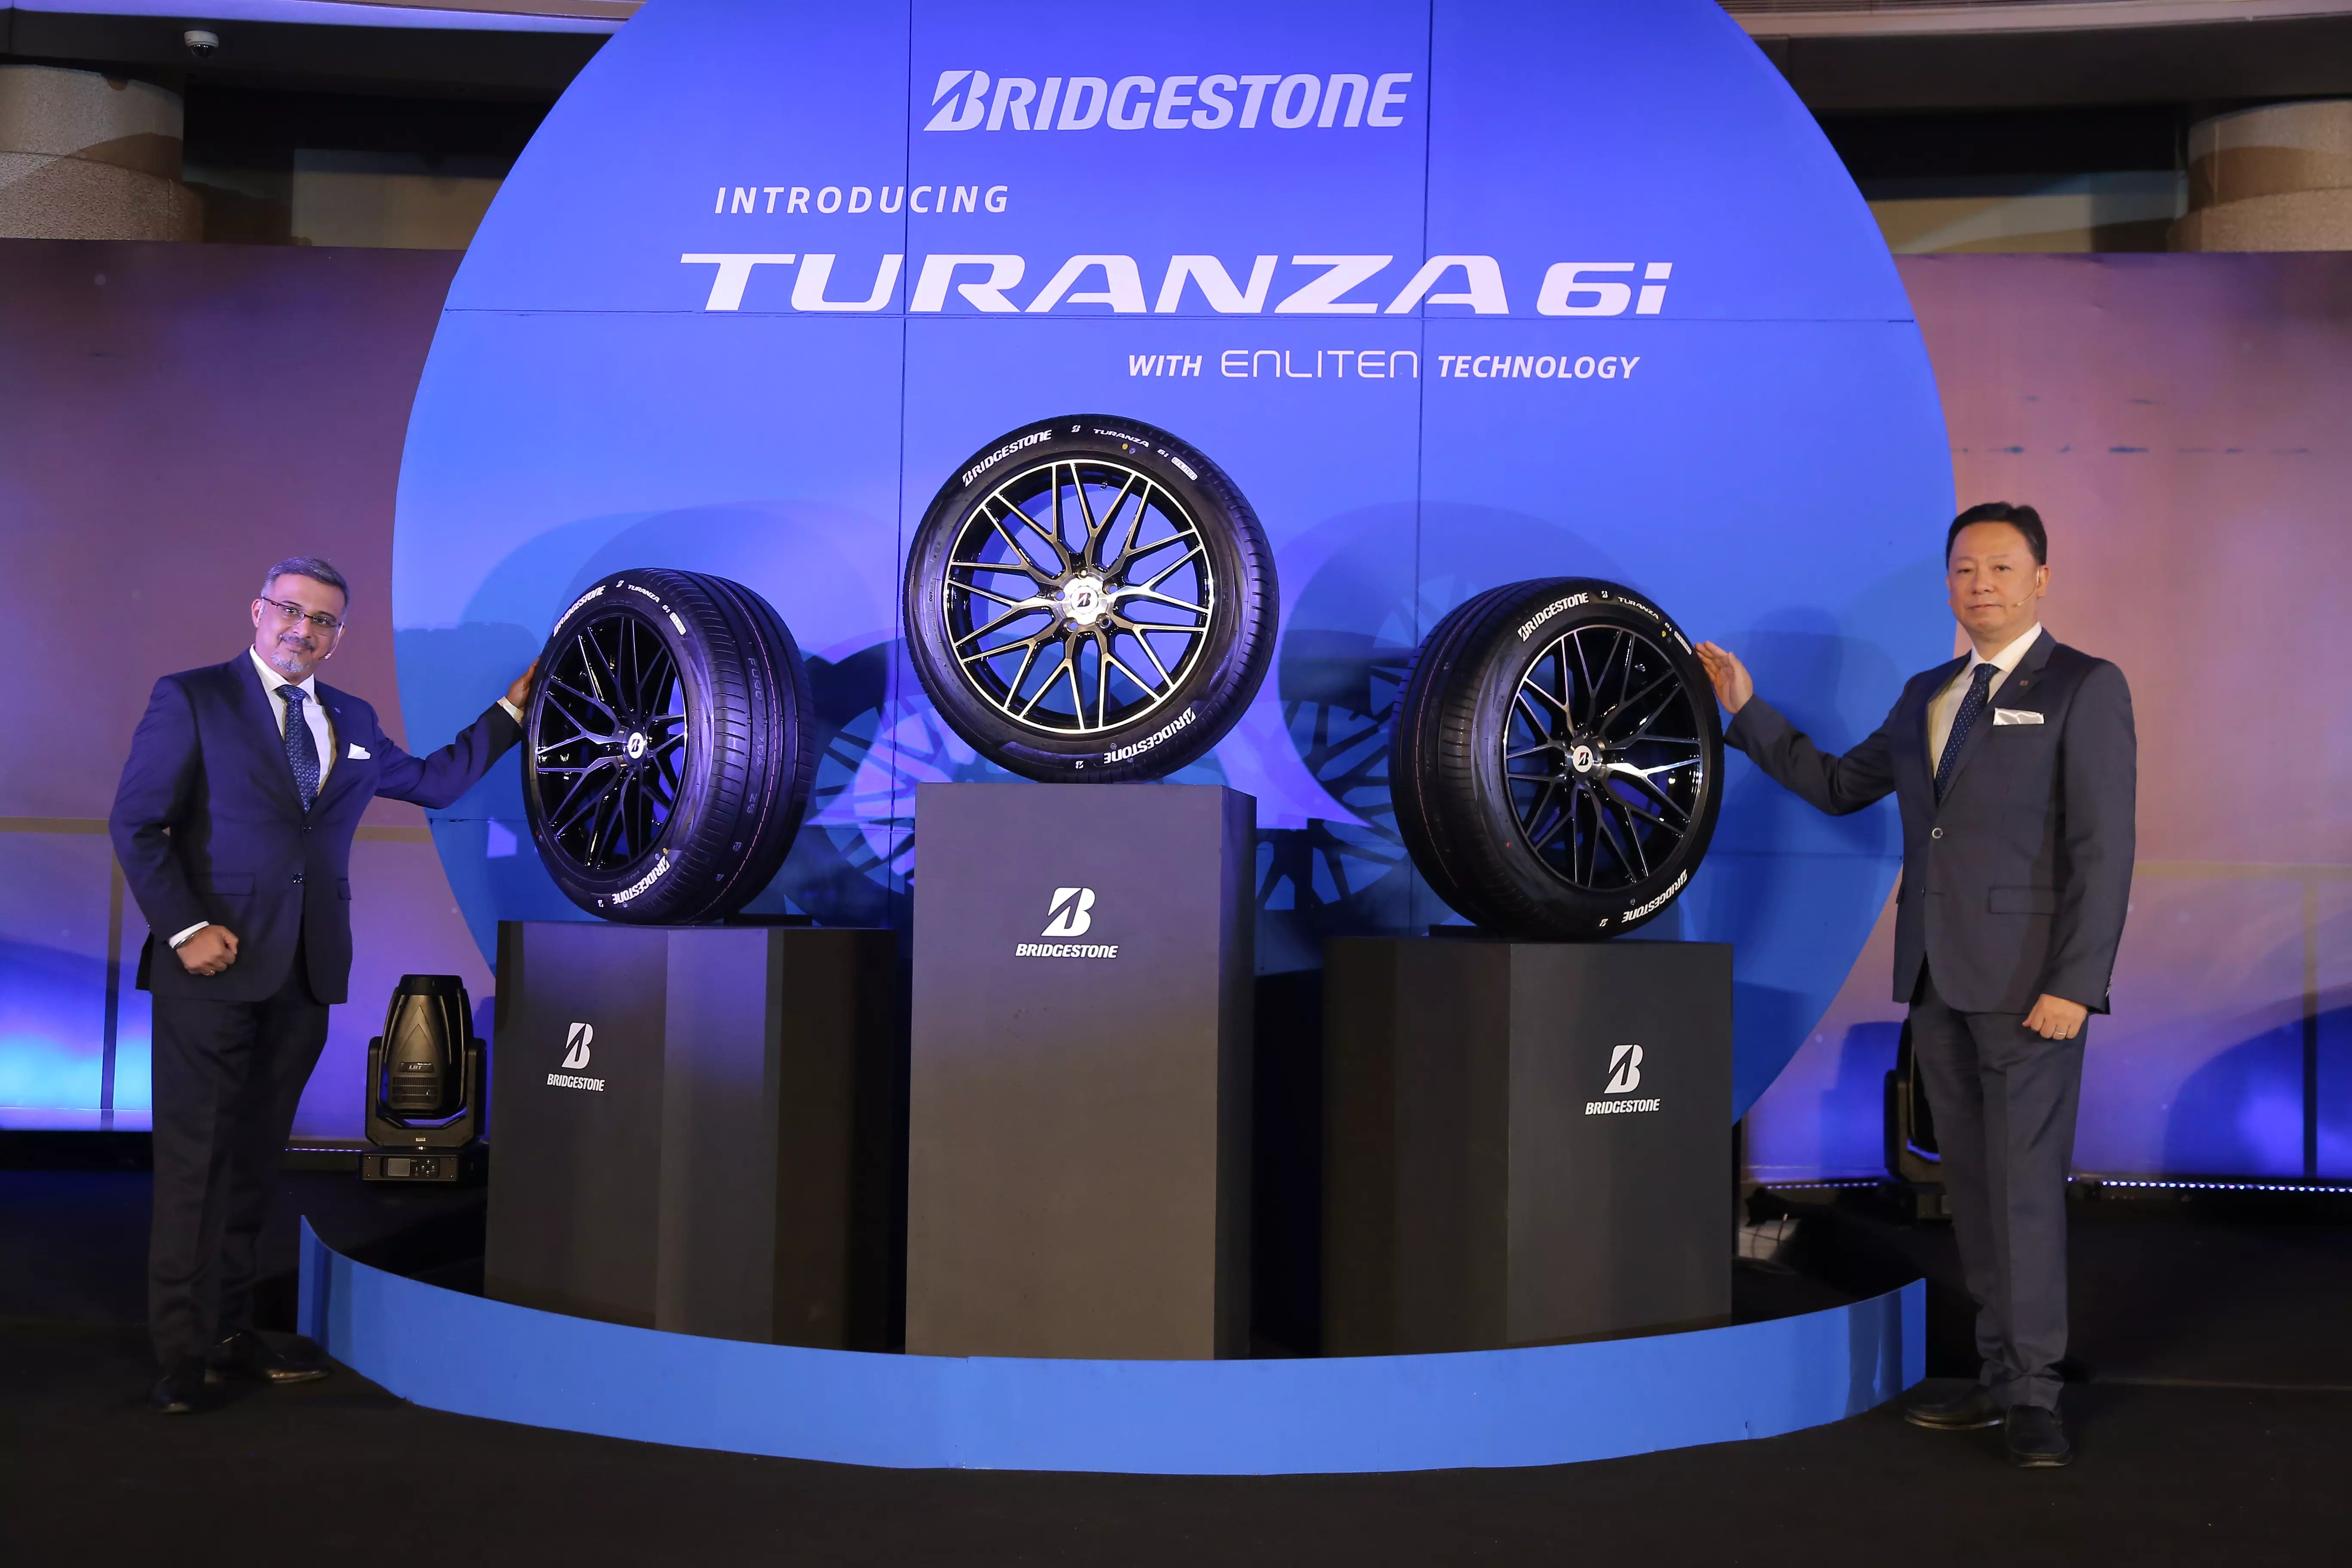 Bridgestone launches premium Turanza 6i tyres for Indian roads